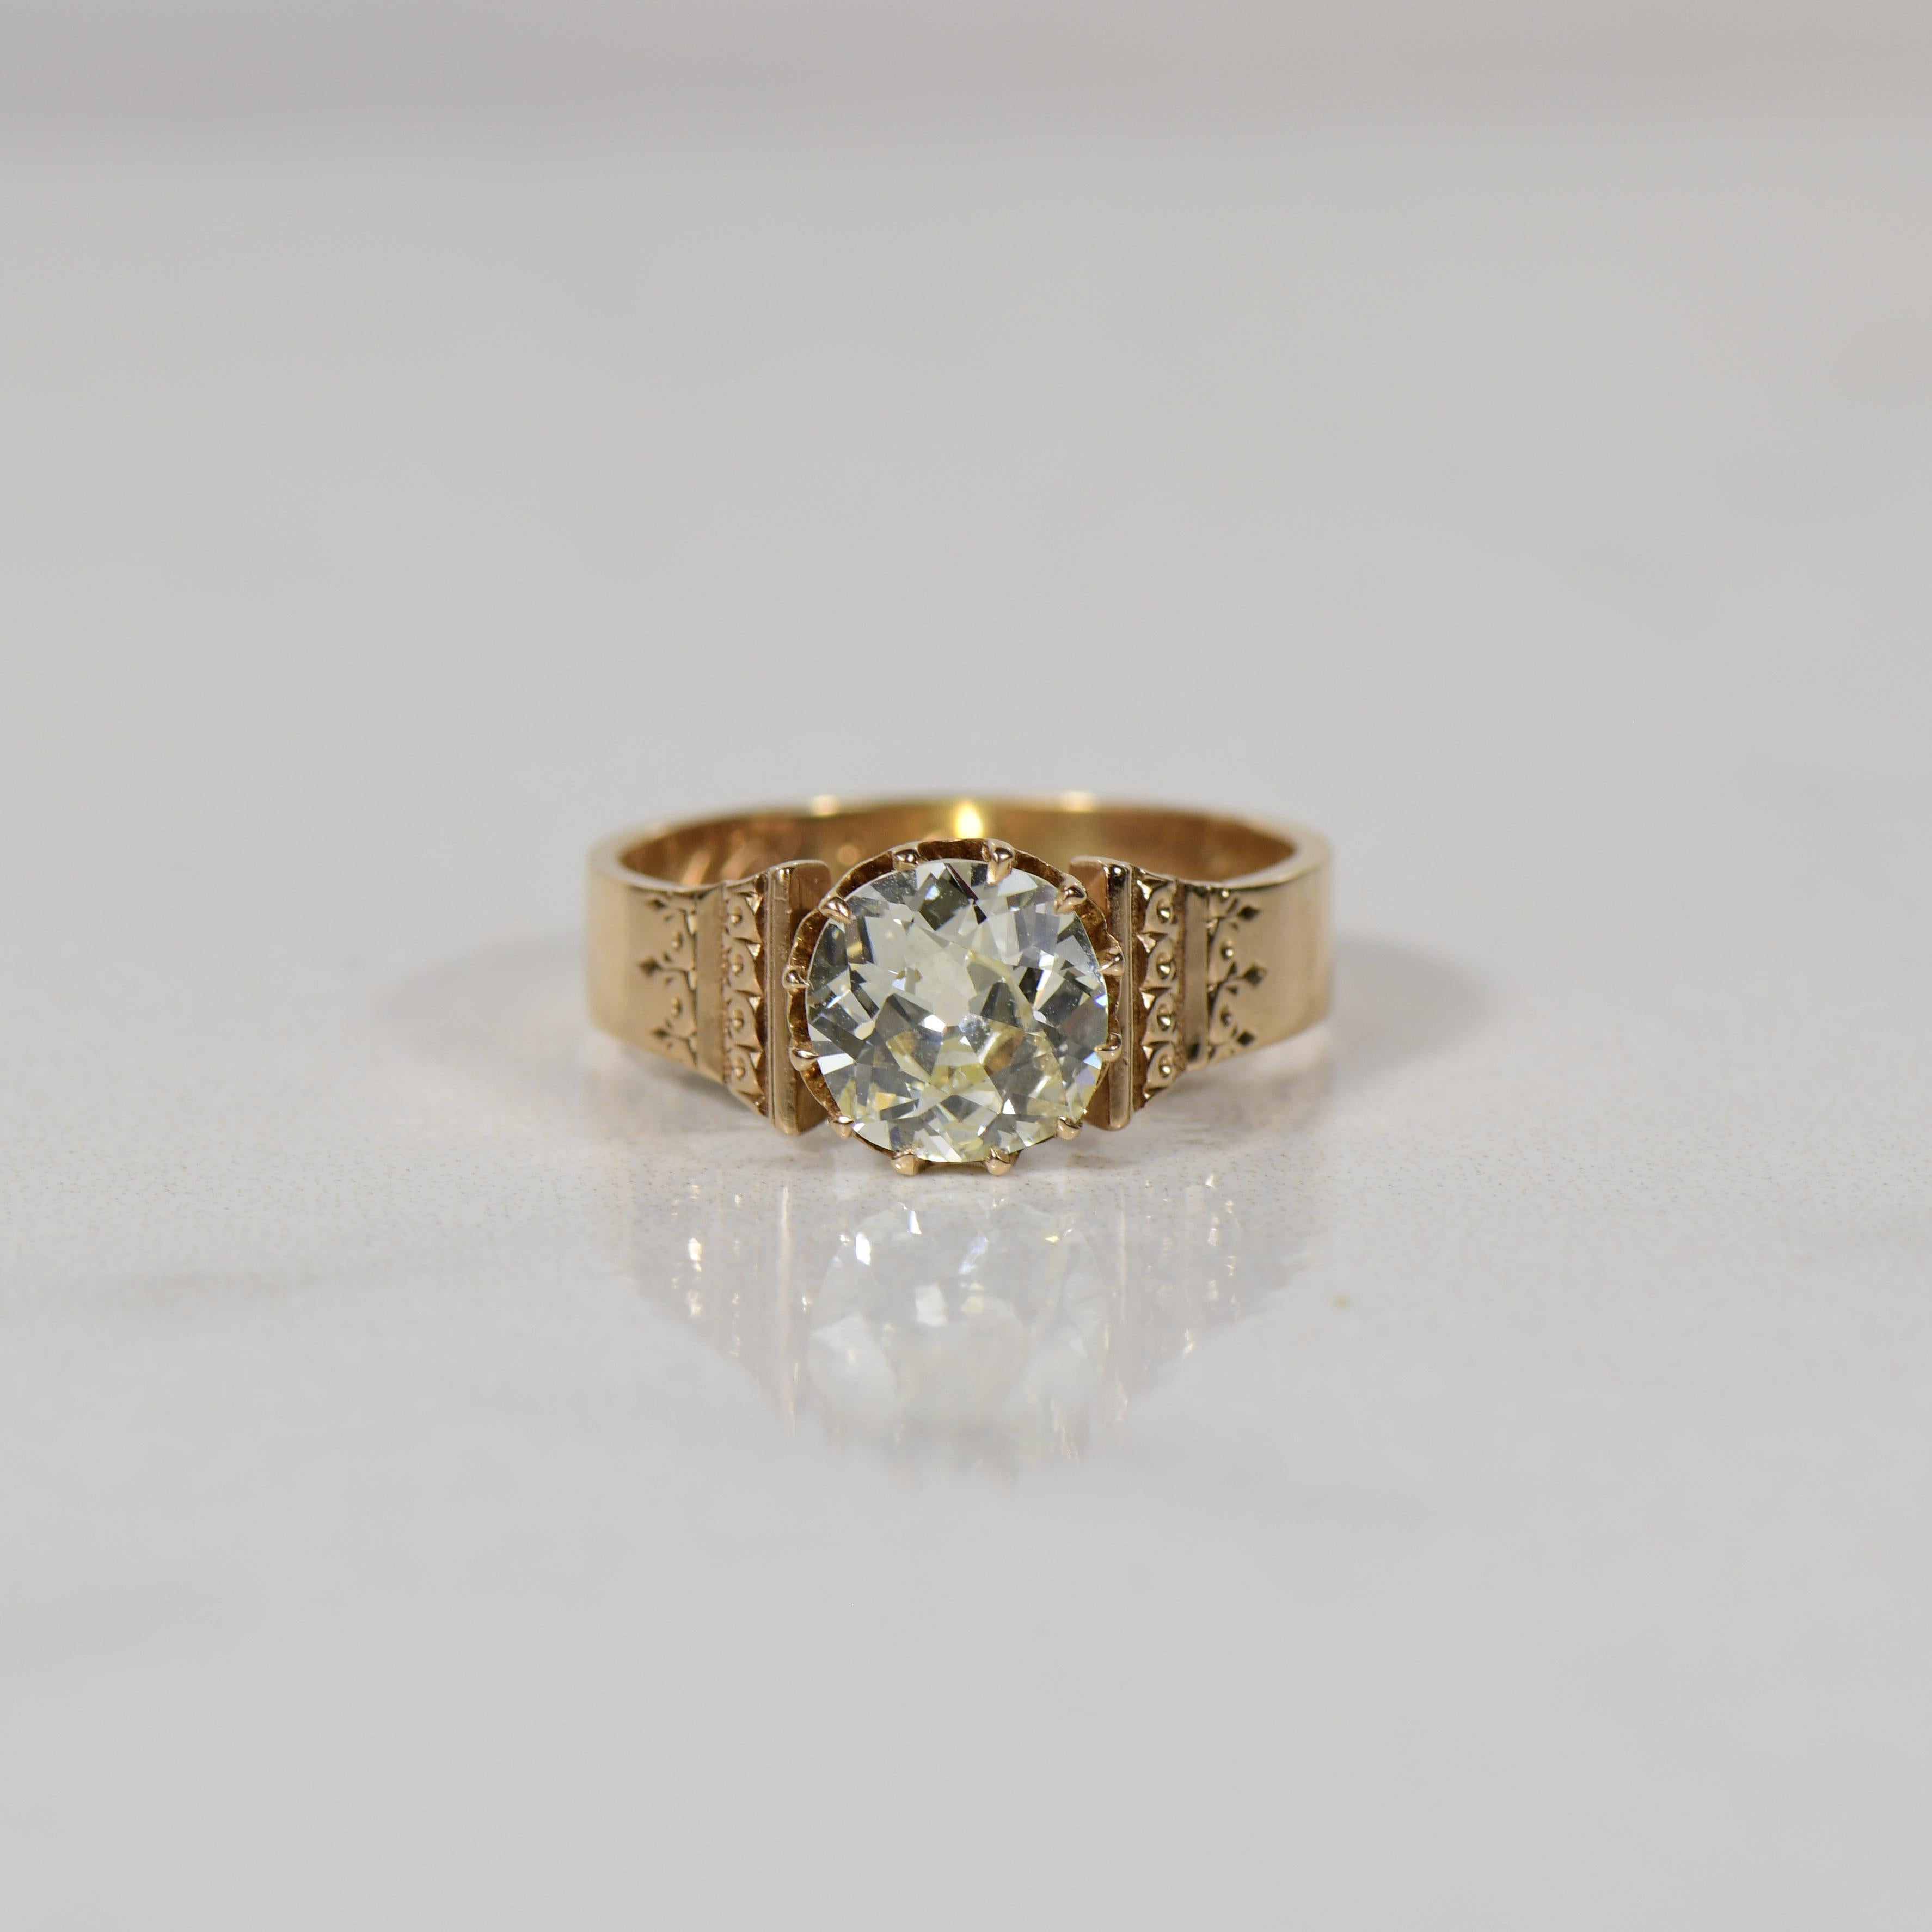 Dieser exquisite viktorianische Verlobungsring aus 14 Karat Roségold ist mit einem schillernden 1,7-Karat-Diamanten besetzt und verkörpert zeitlose Romantik und Raffinesse. Auf dem Ring sind die Initialen 